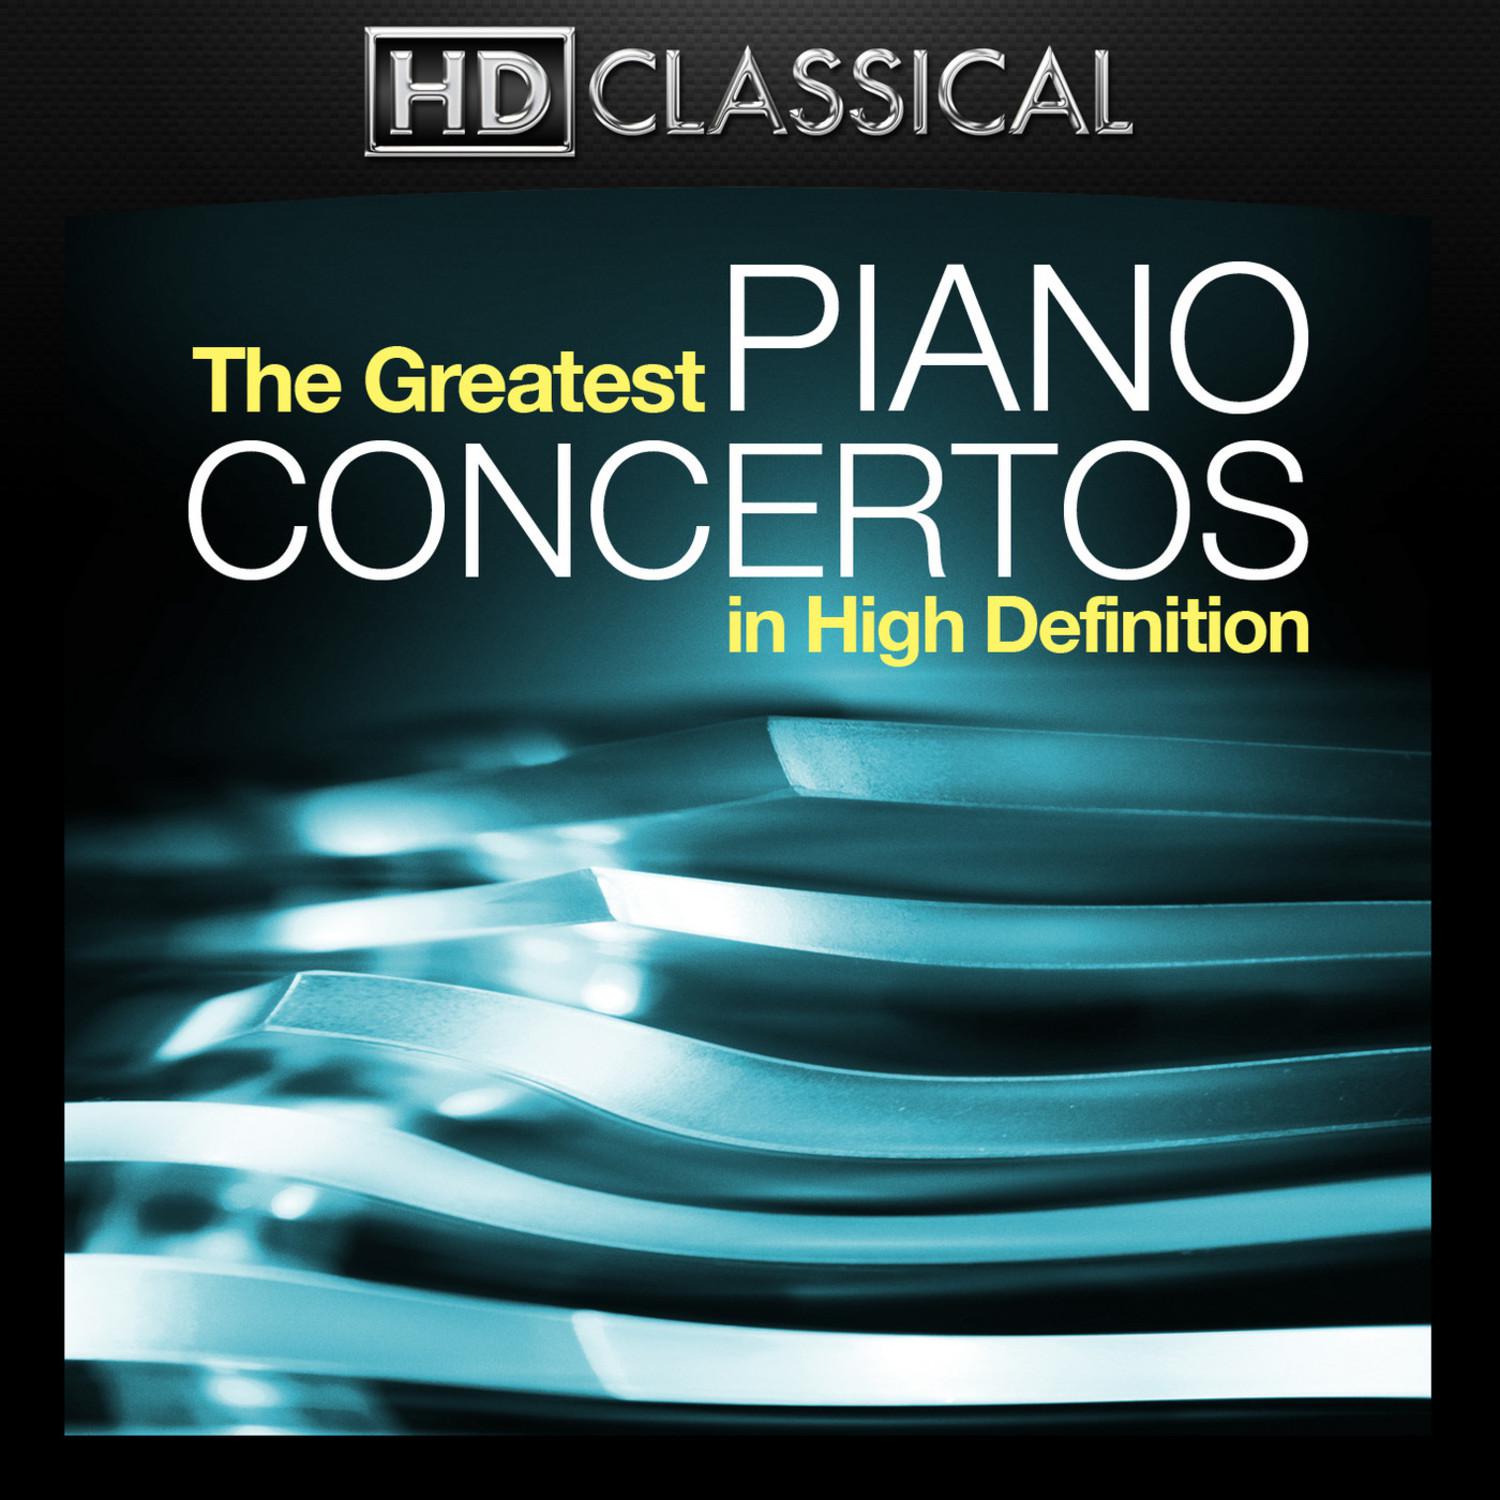 Bonus Track: Concerto No. 2 in C Minor for Piano and Orchestra, Op. 18: II. Adagio sostenuto